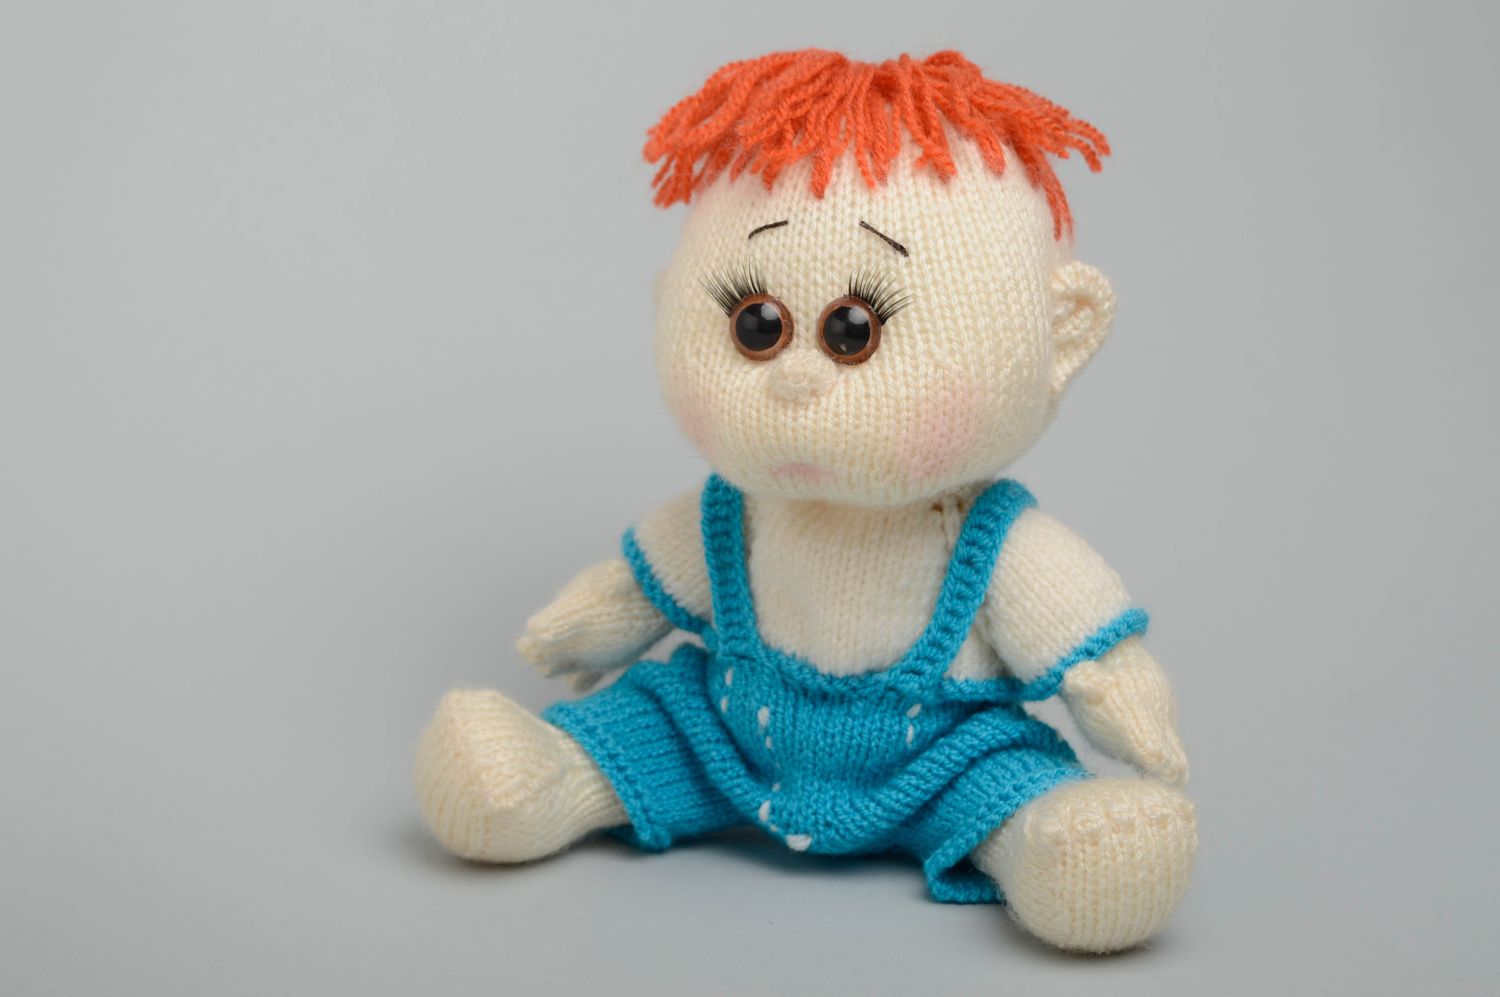 Вязаная спицами игрушка кукла ручной работы Мальчик фото 1